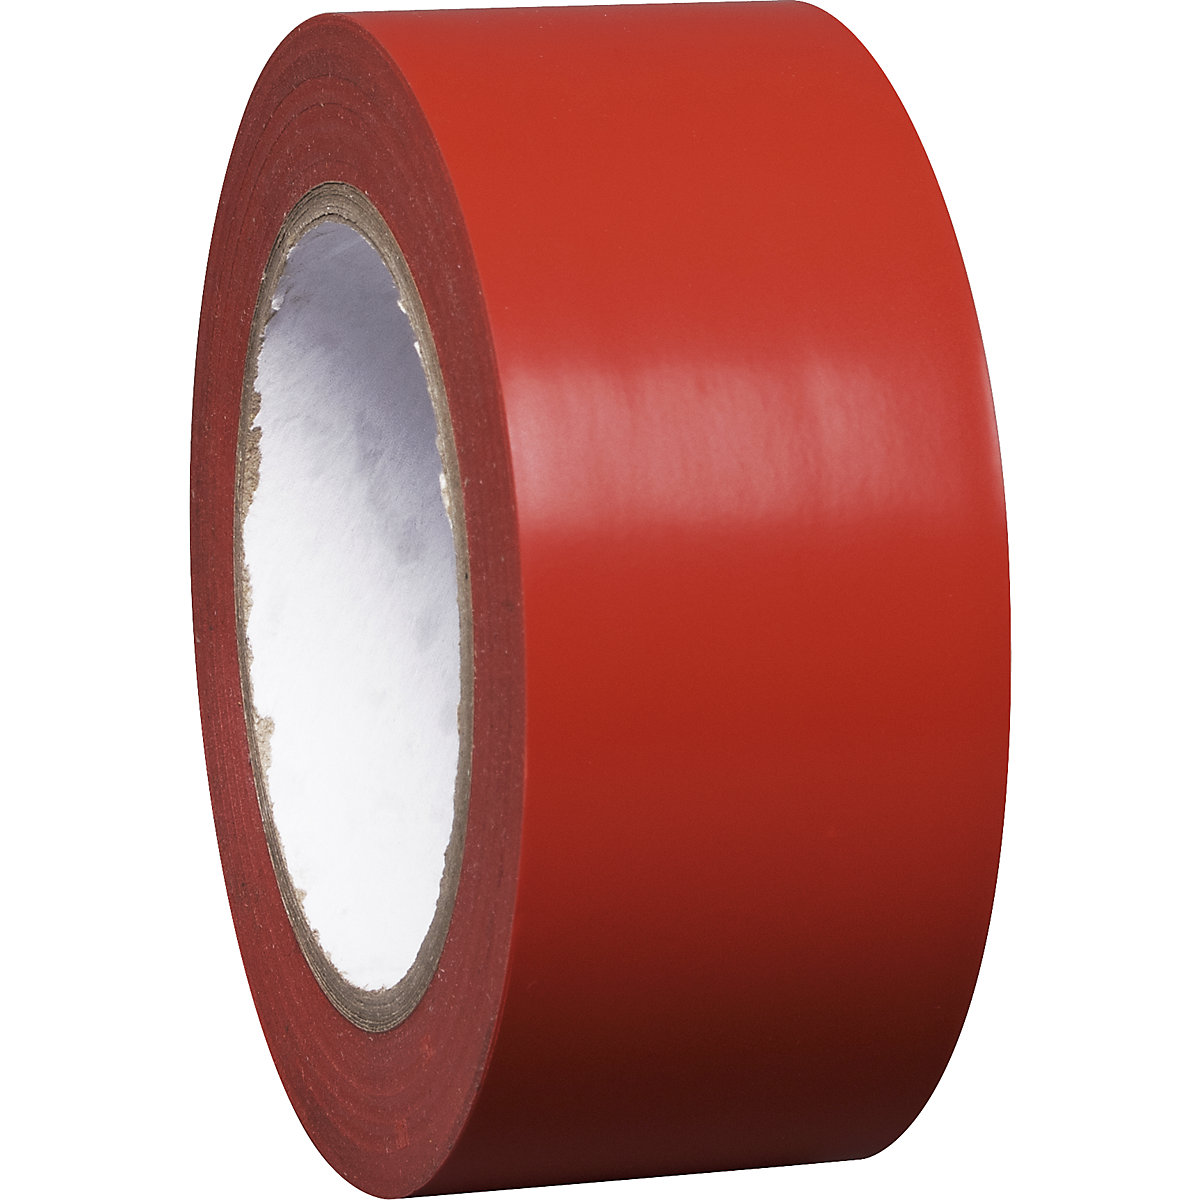 Traka za označavanje podova od vinila, jednobojna, širina 50 mm, u crvenoj boji, pak. 8 rola-4